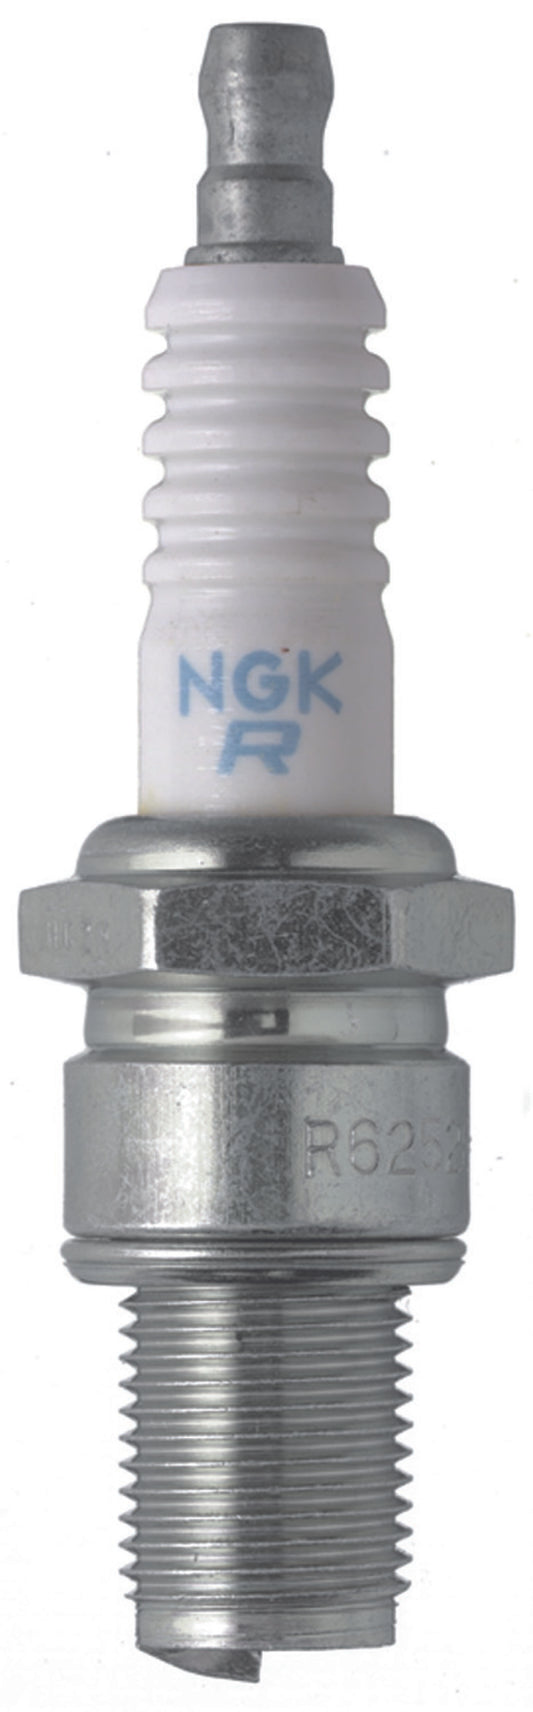 NGK Racing Spark Plug Box of 4 (R6918B-7)